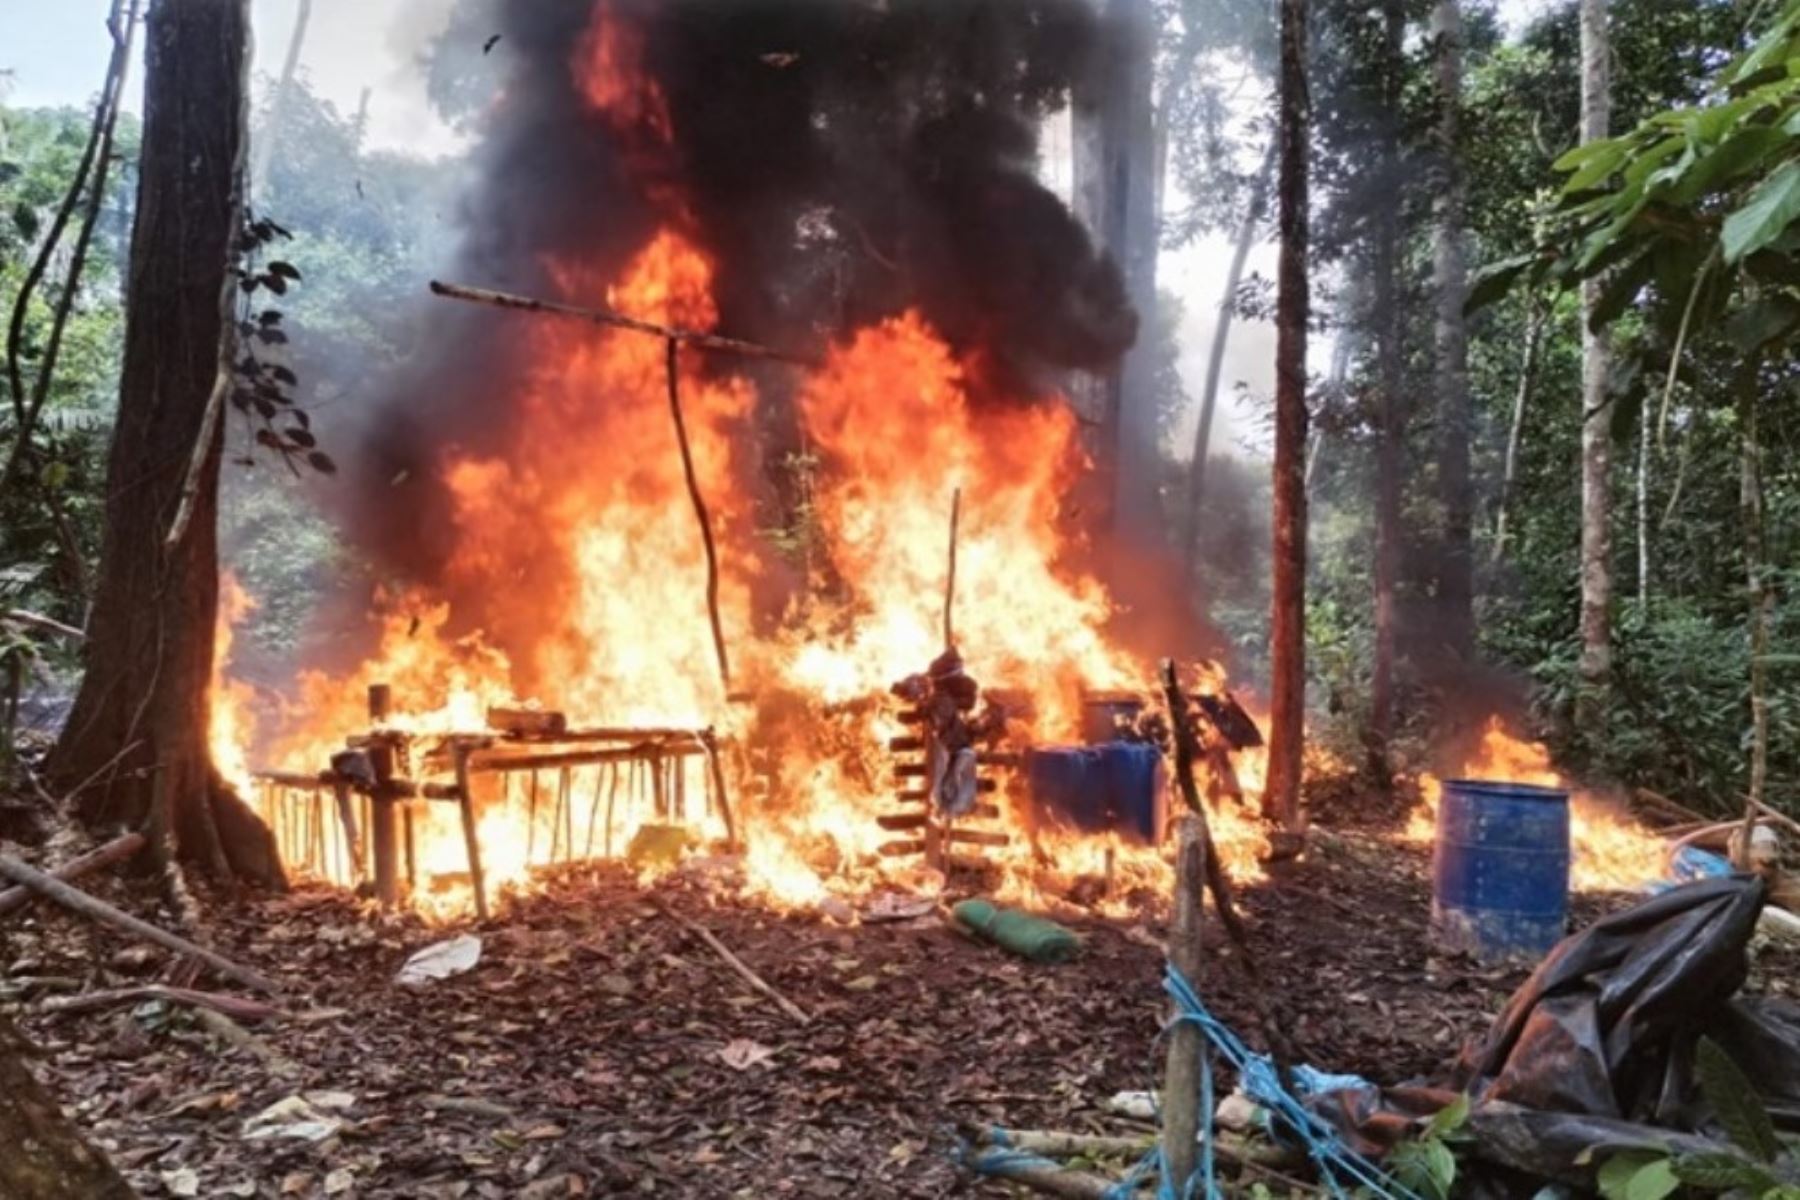 Intervención policial culminó con la destrucción de insumos e instalaciones para el procesamiento de droga en Ucayali. Foto: PNP/Difusión.